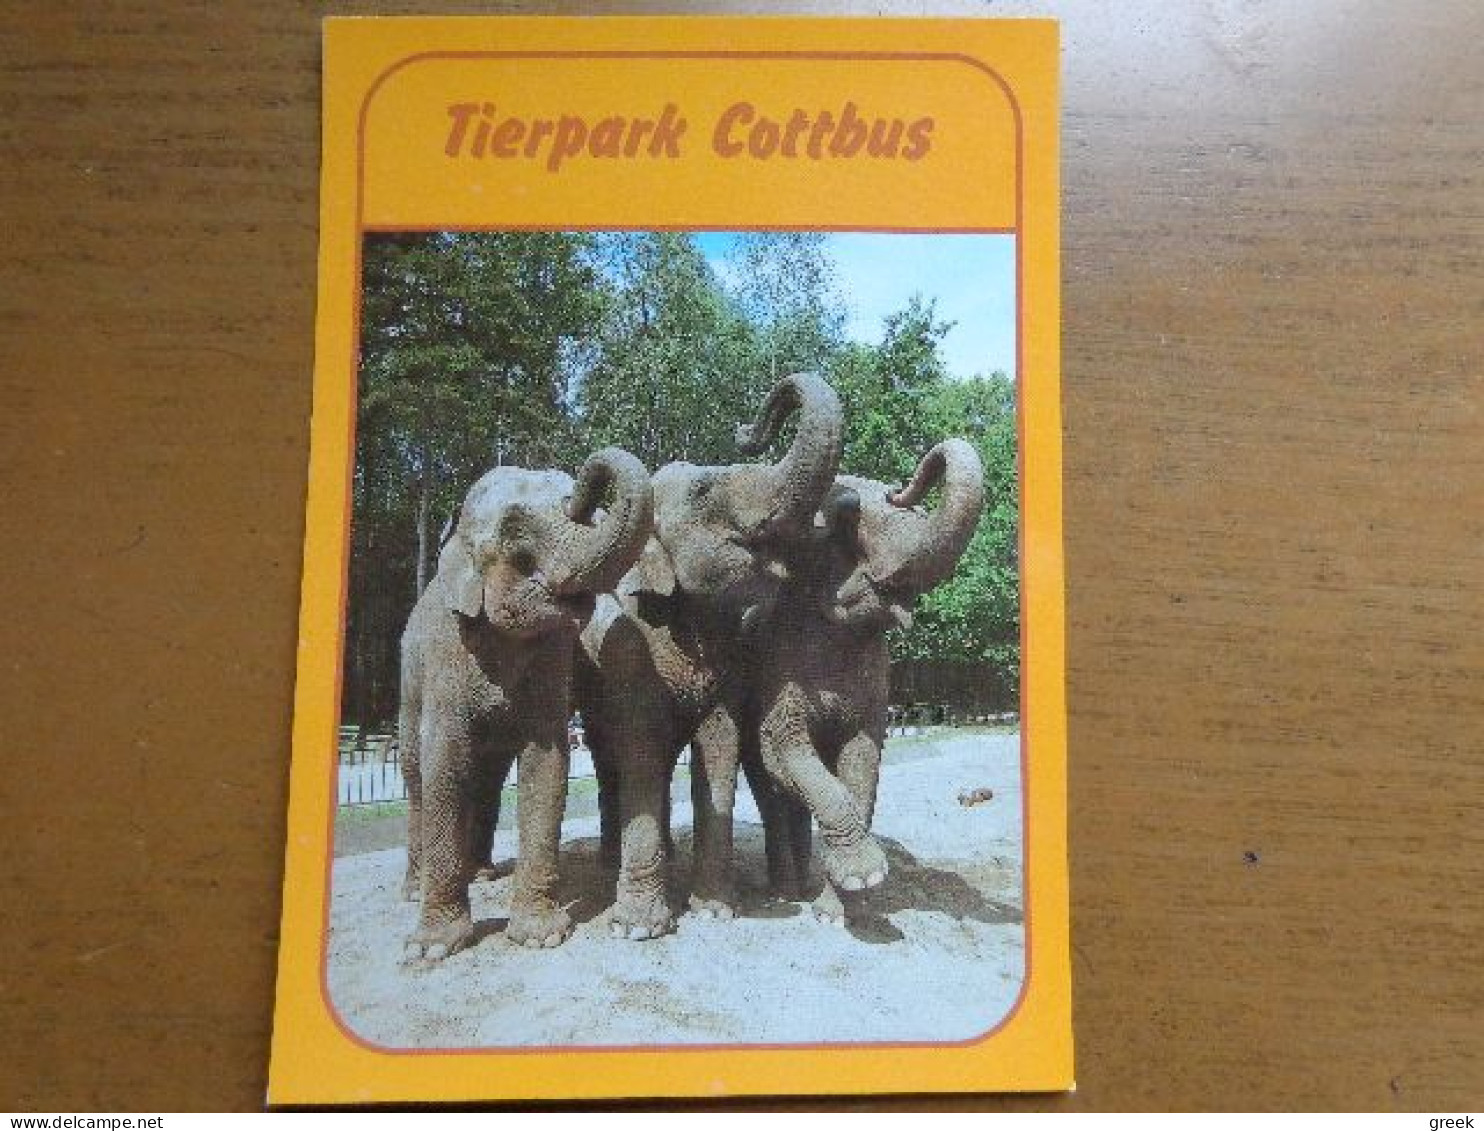 Zoo, Dierenpark, Tierpark / Tierpark Cottbus, Asiatische Elefanten --> Unwritten - Olifanten